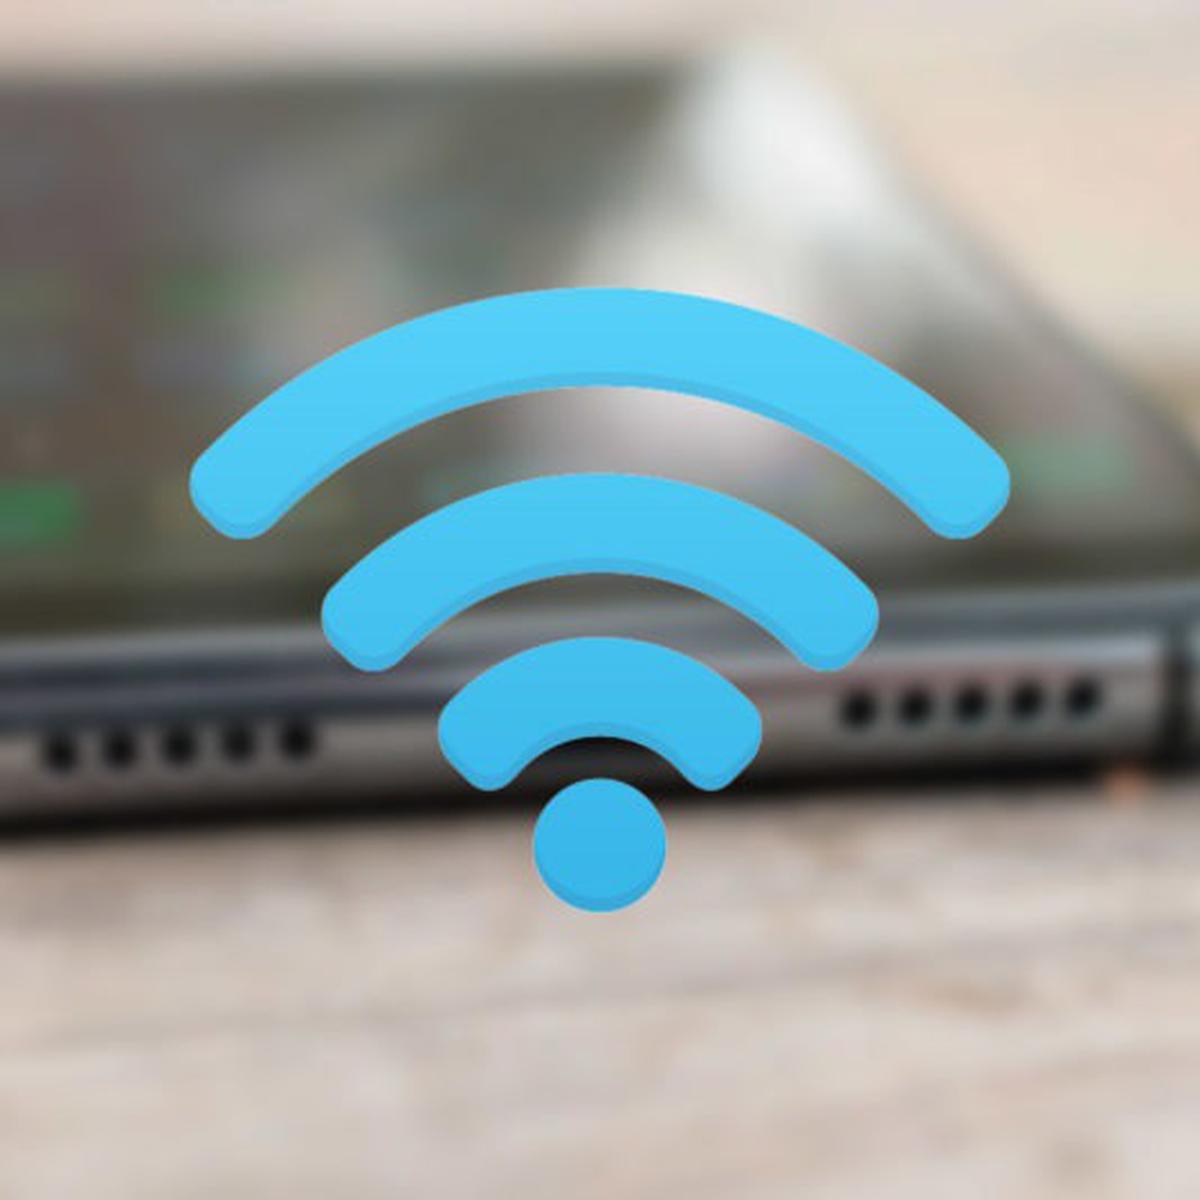 Cómo mejorar el WiFi de casa sin usar repetidores